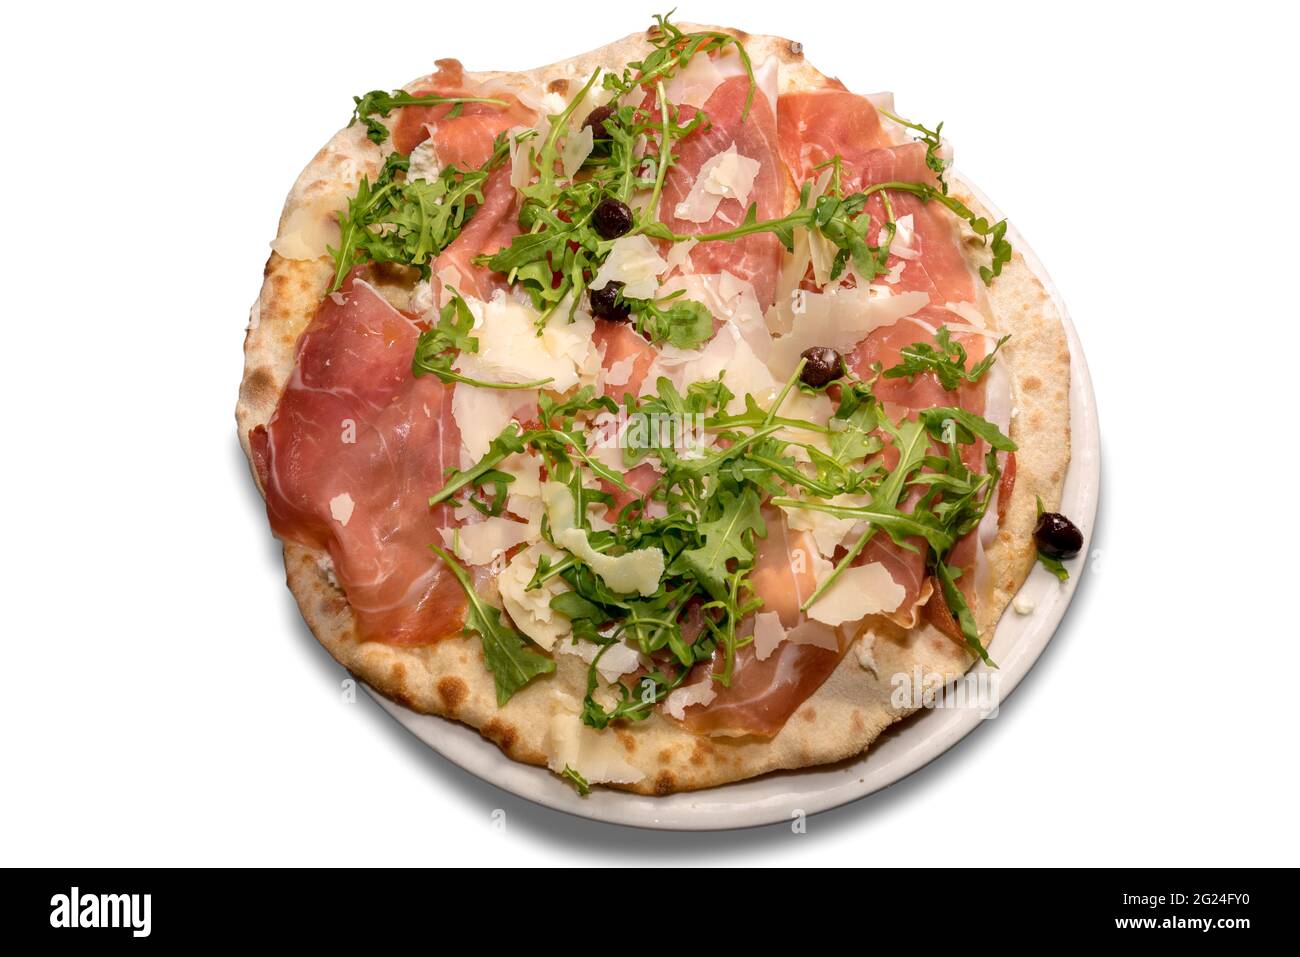 Pizza au jambon de Parme, flocons de parmesan, salade de roquette et olives isolées sur blanc Banque D'Images